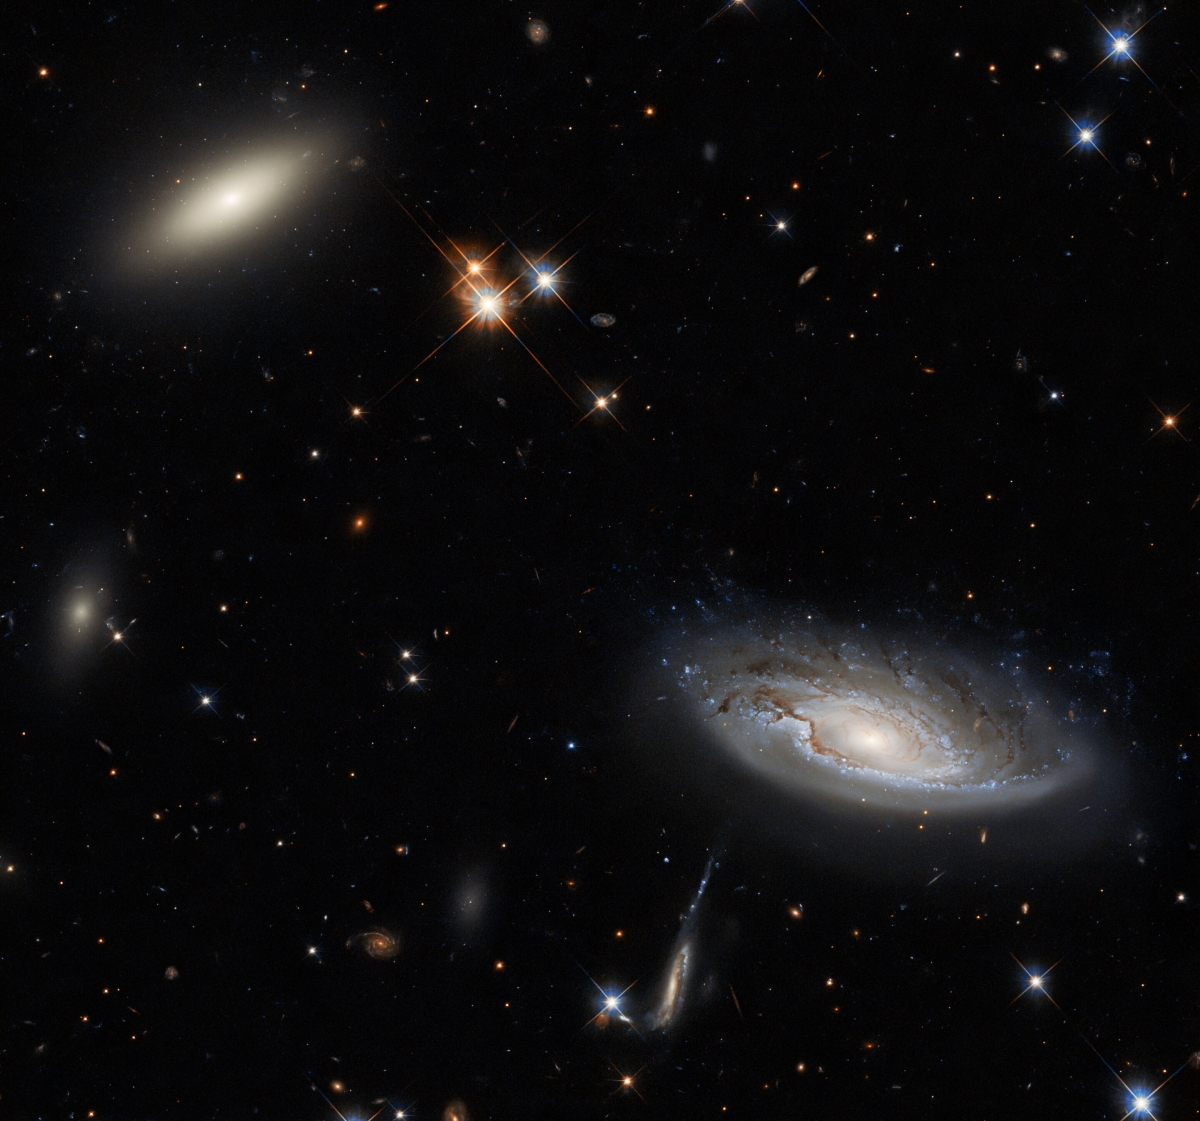 Ống kính góc rộng của kính thiên văn Hubble cho thấy hình ảnh của hai thiên hà trong chòm sao Anh Tiên. Cùng với hàng nghìn thiên hà, chòm sao này là một trong những vật thể lớn nhất vũ trụ từng được biết tới.